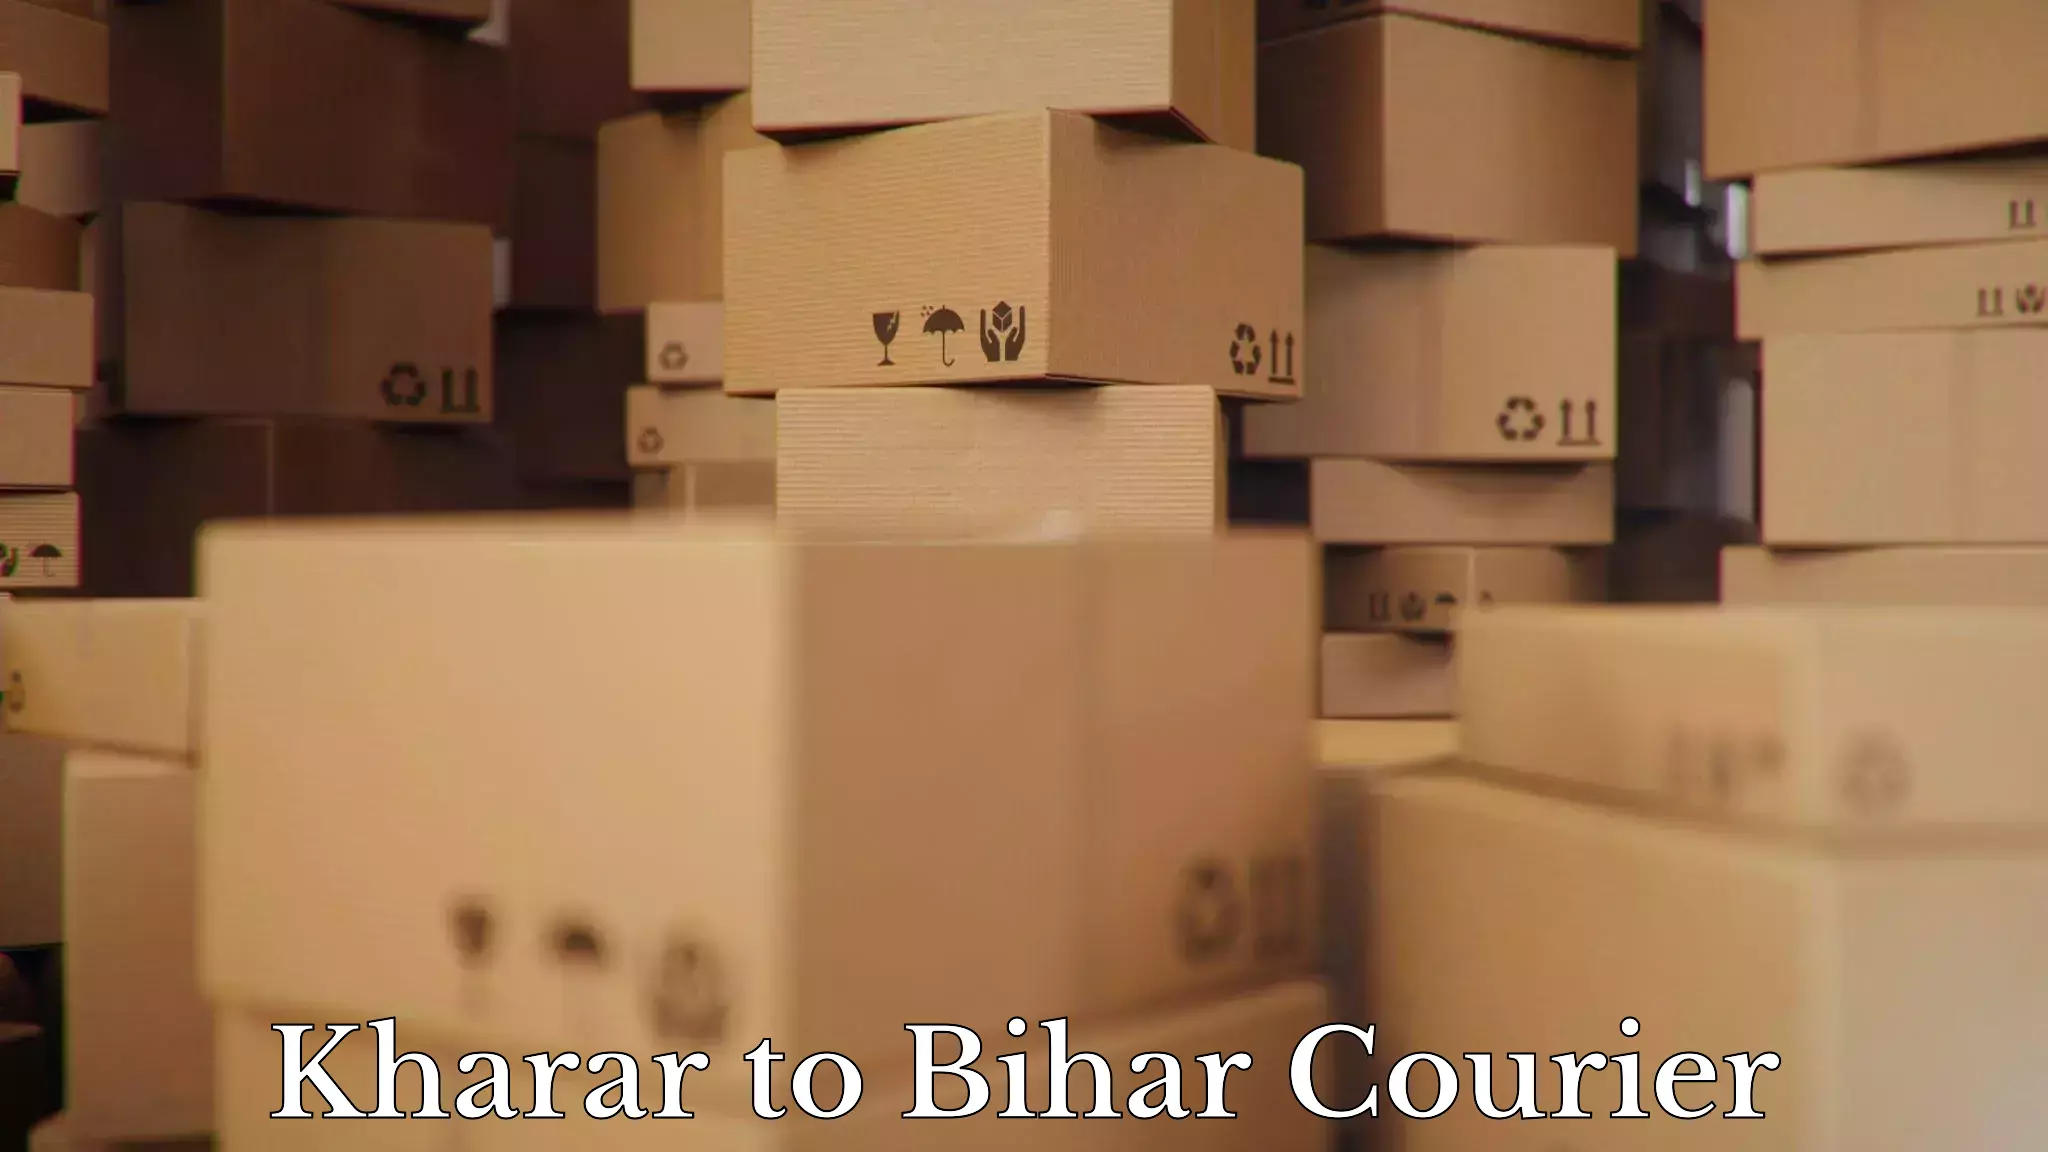 Efficient moving company Kharar to Minapur